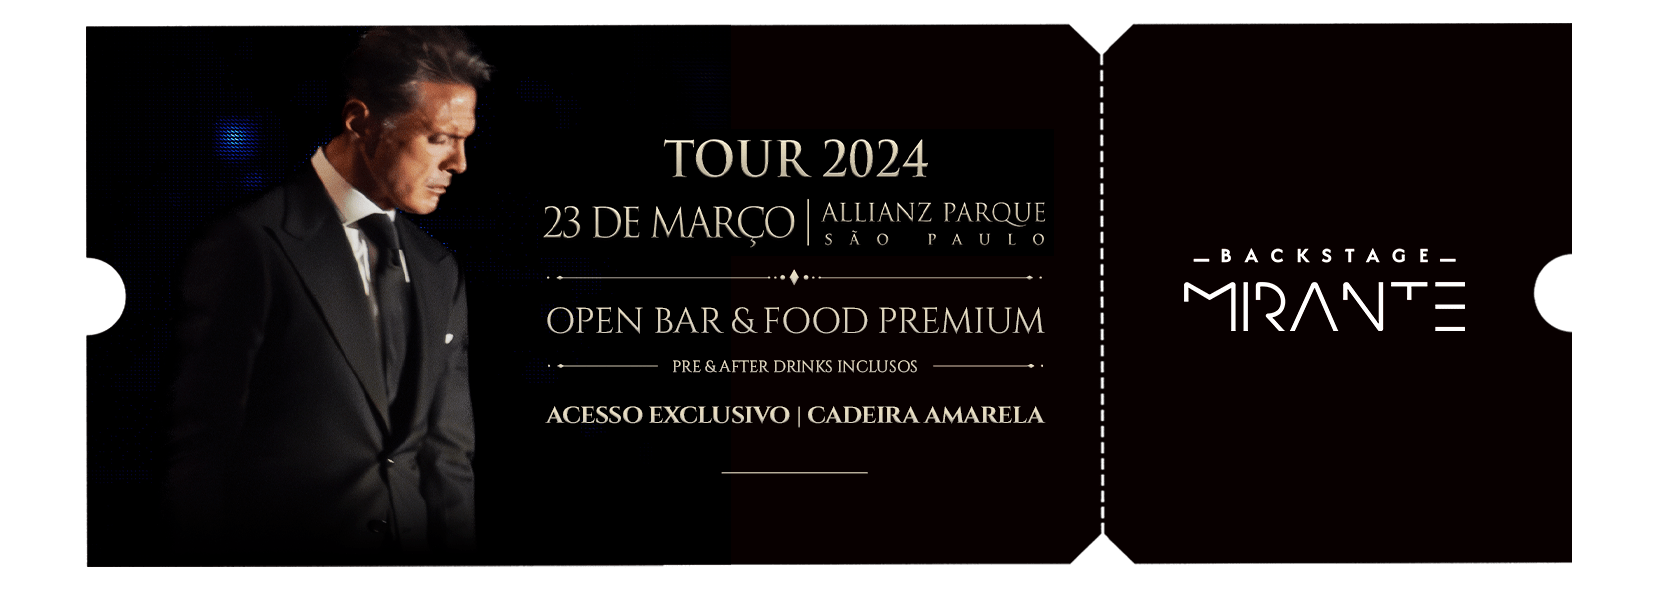 Luis Miguel - Backstage Mirante - Allianz Parque